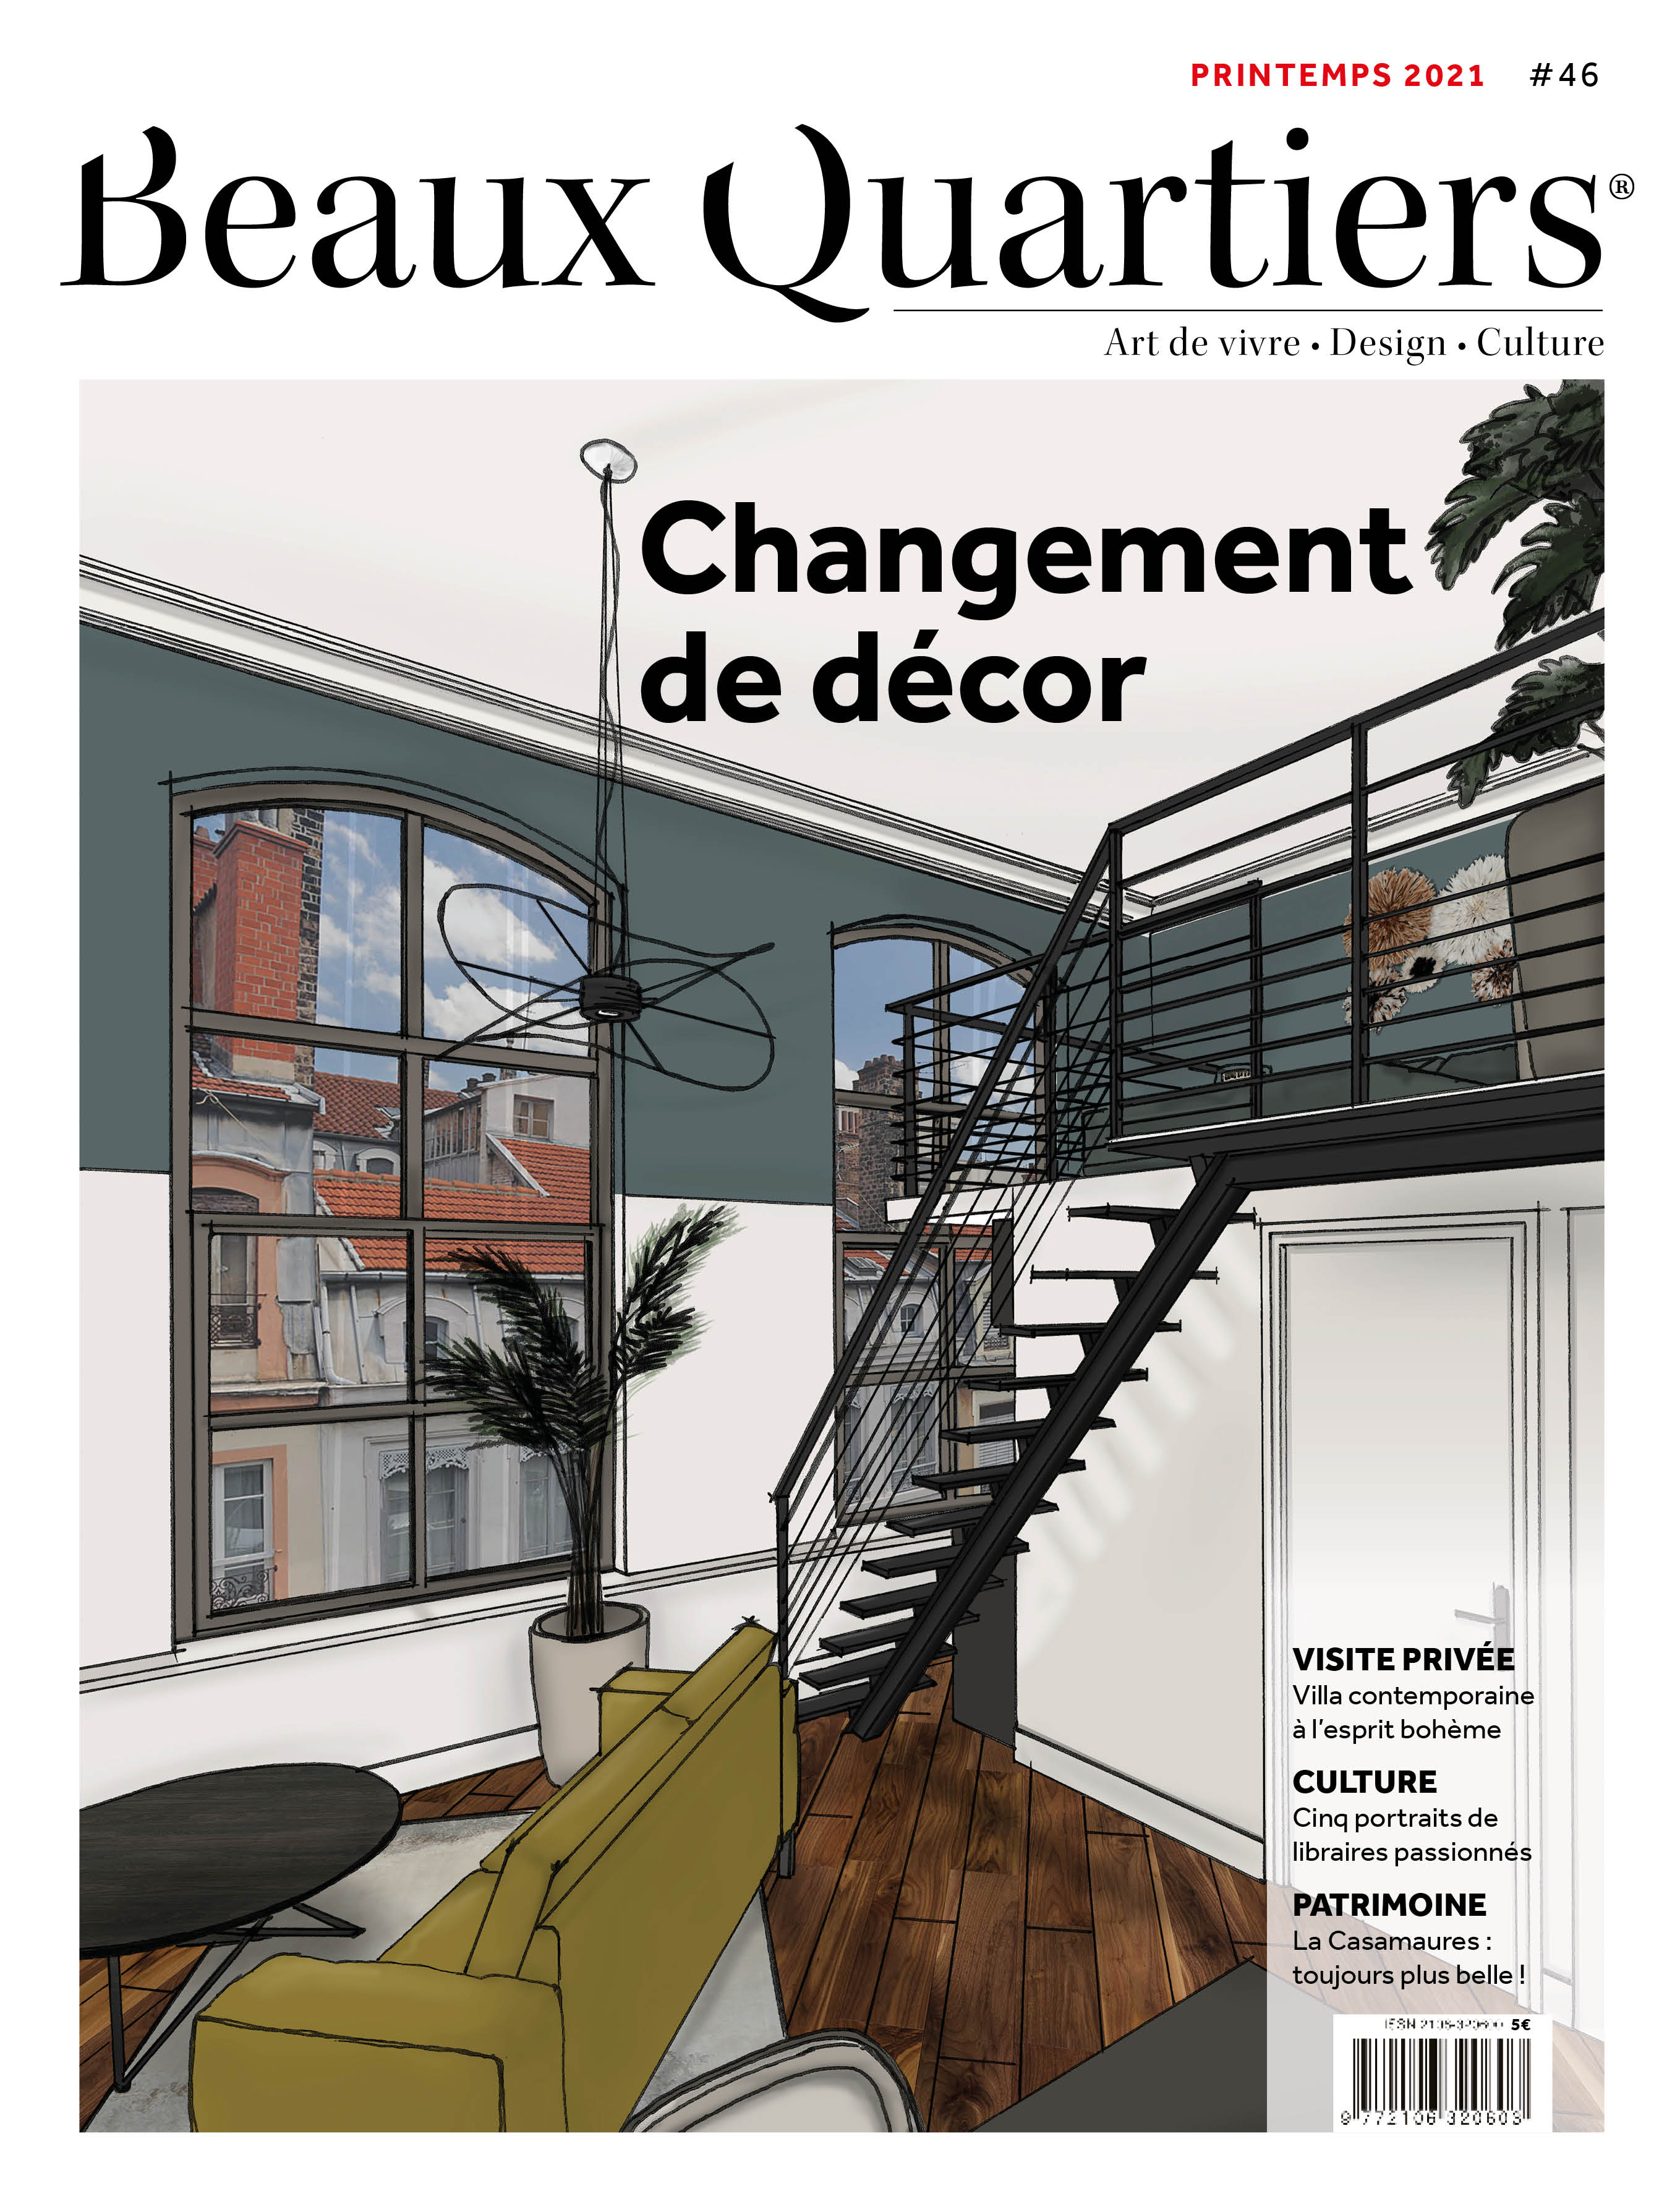 Beaux Quartiers 46 – Printemps 2021